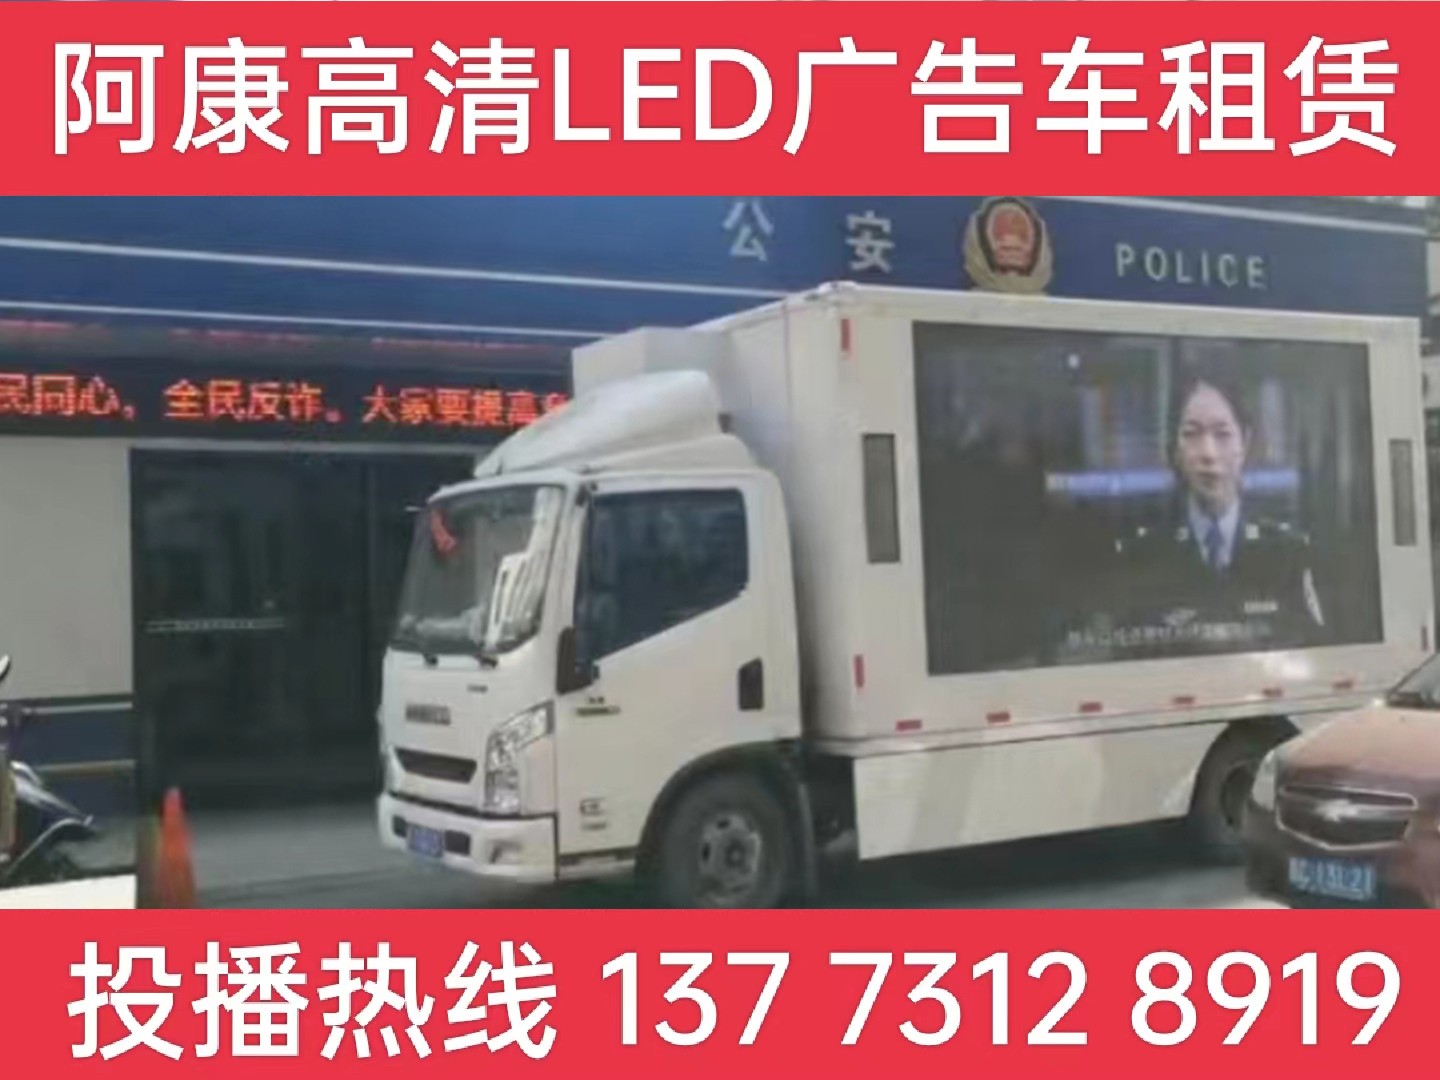 靖江LED广告车租赁-反诈宣传